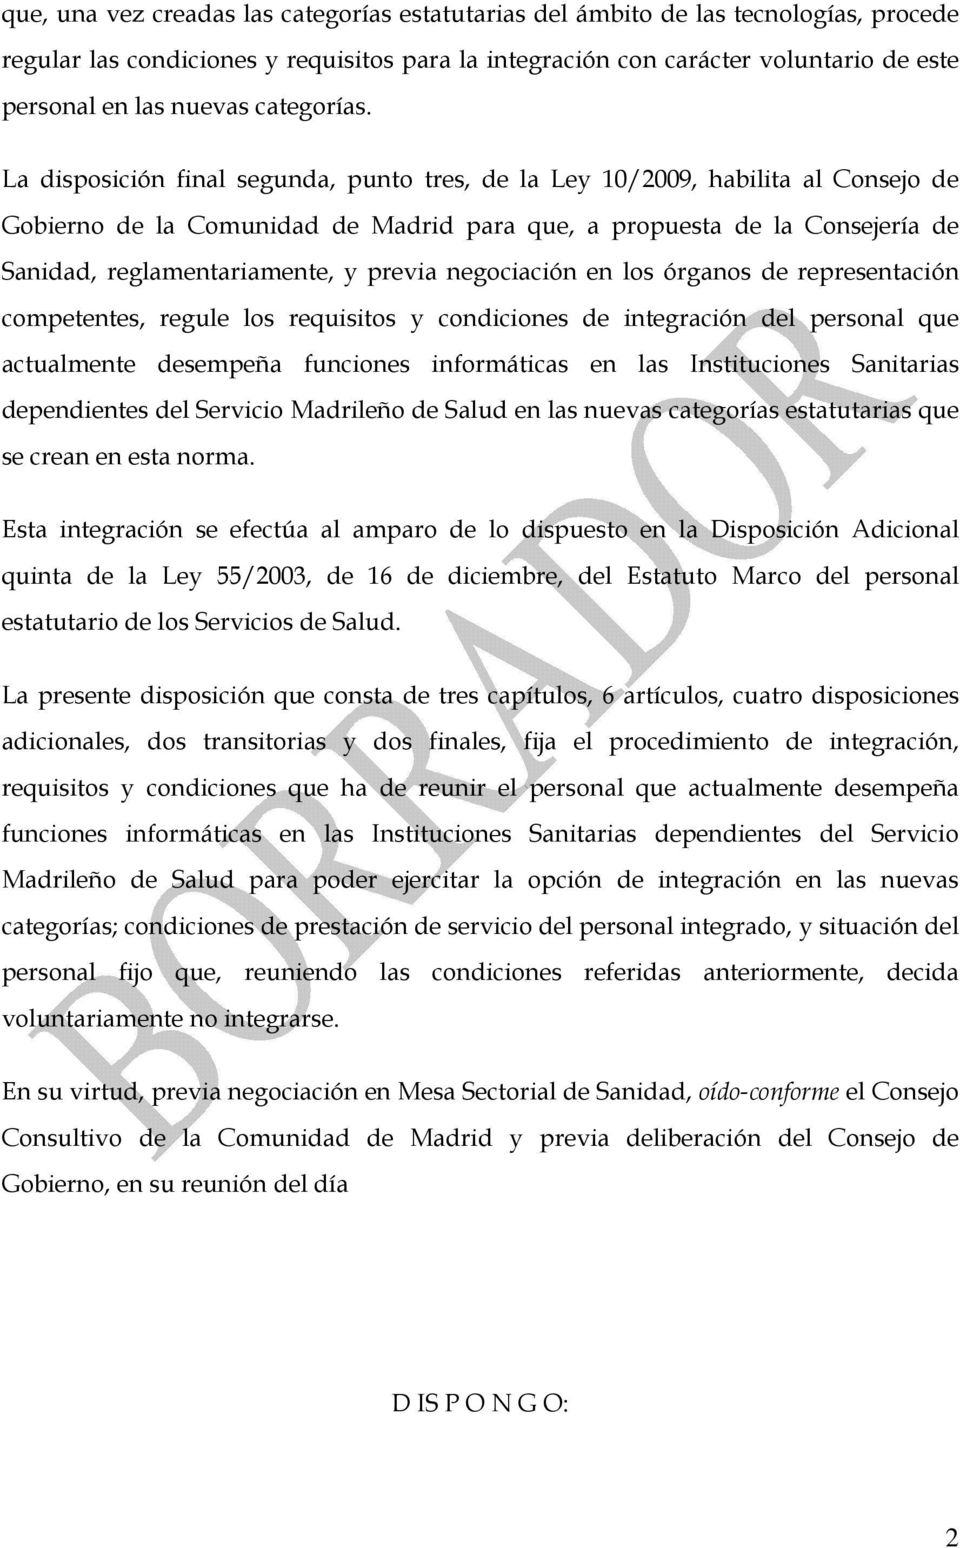 La disposición final segunda, punto tres, de la Ley 10/2009, habilita al Consejo de Gobierno de la Comunidad de Madrid para que, a propuesta de la Consejería de Sanidad, reglamentariamente, y previa